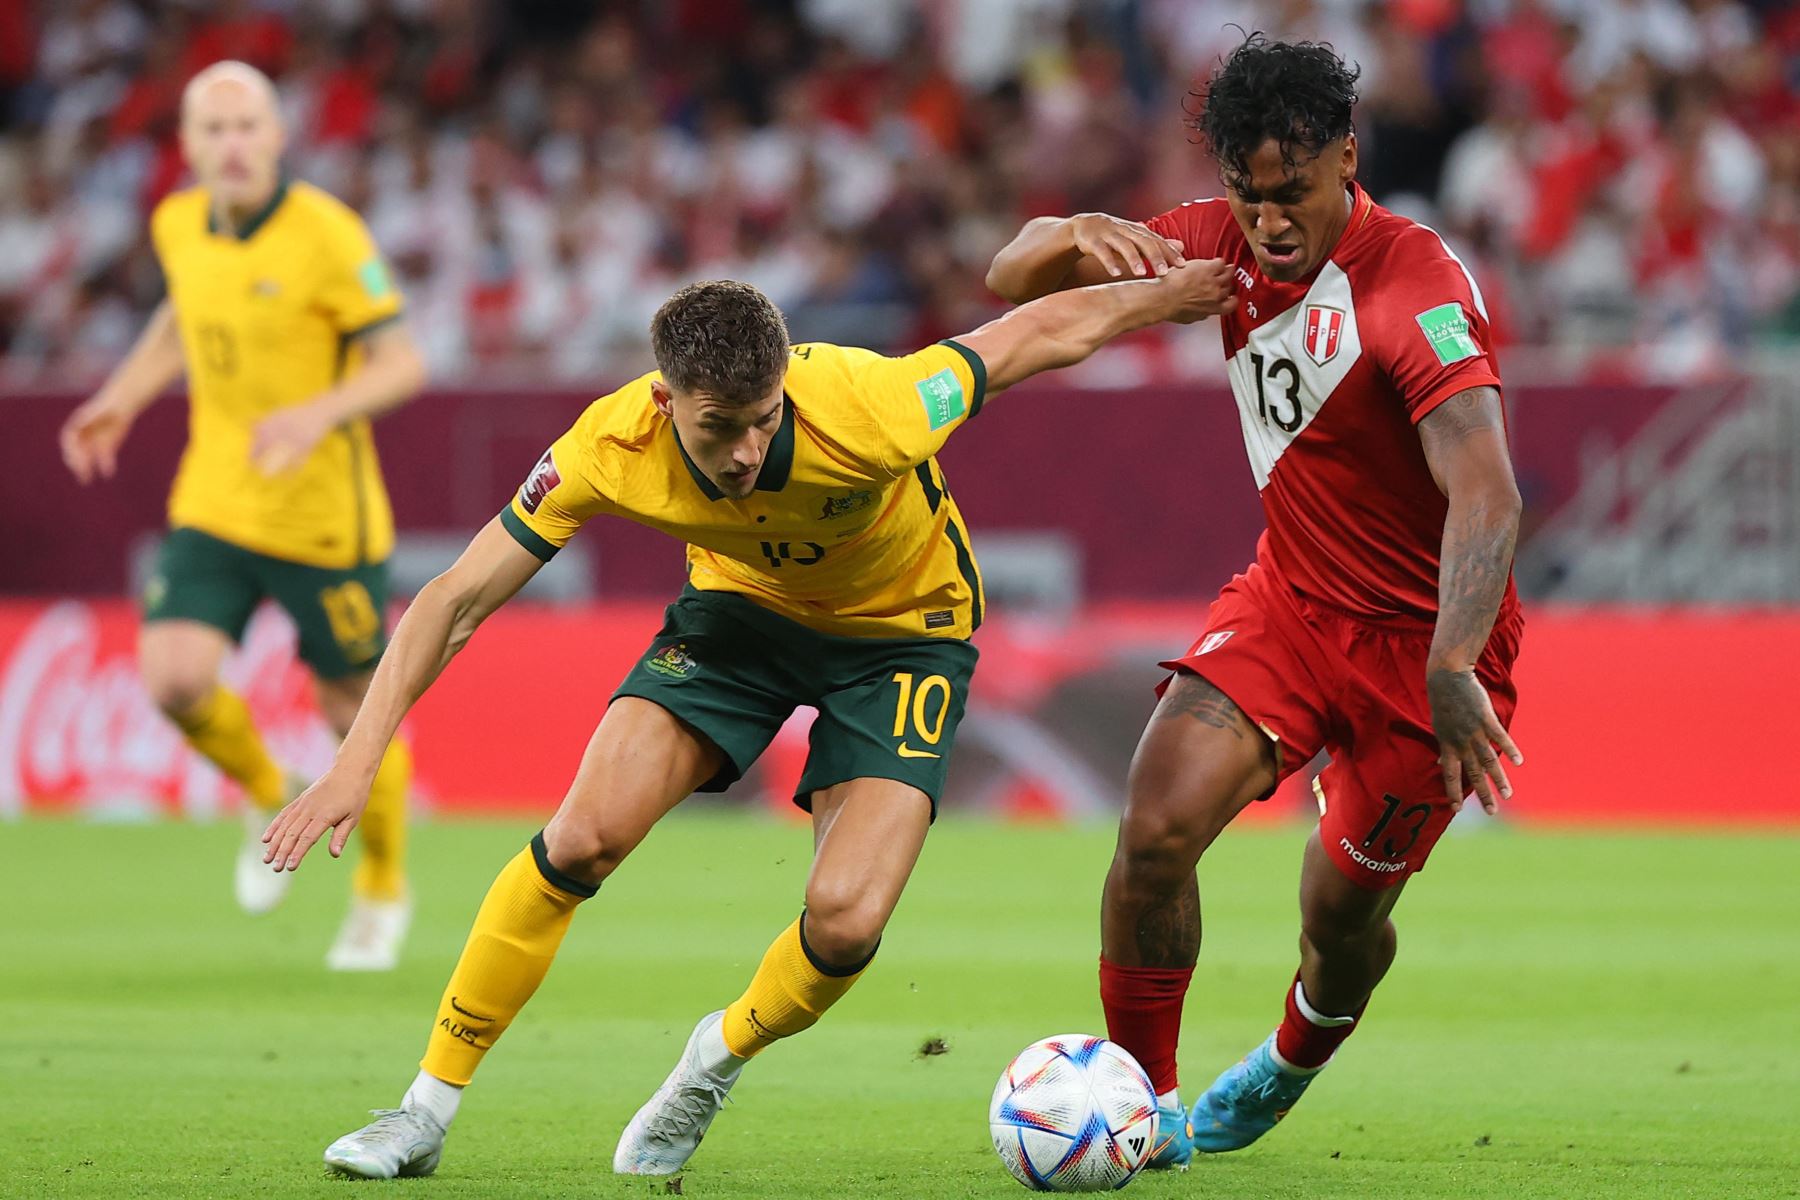 El jugador peruano Renato Tapia disputa el balón con el jugador  australiano  durante un encuentro entre Perú y Australia para el pase al Mundial de fútbol de Catar 2022.
Foto: AFP